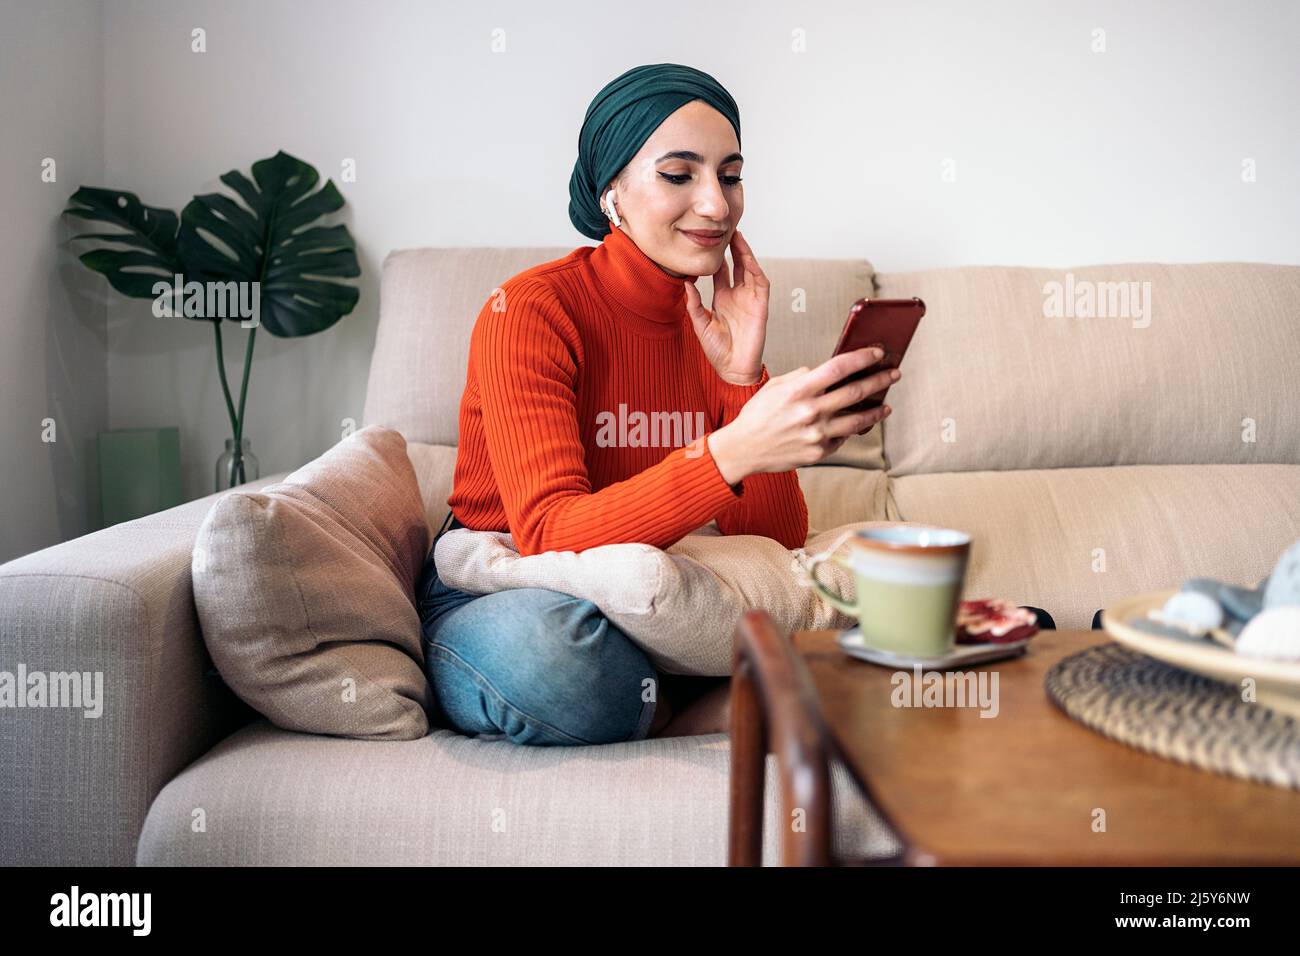 Positive muslimische Frau in legerer Kleidung und Kopftuch, die das Gesicht berührt und in sozialen Medien auf dem Handy surft, während sie mit gekreuzten Beinen auf der Couch und dem LIS sitzt Stockfoto